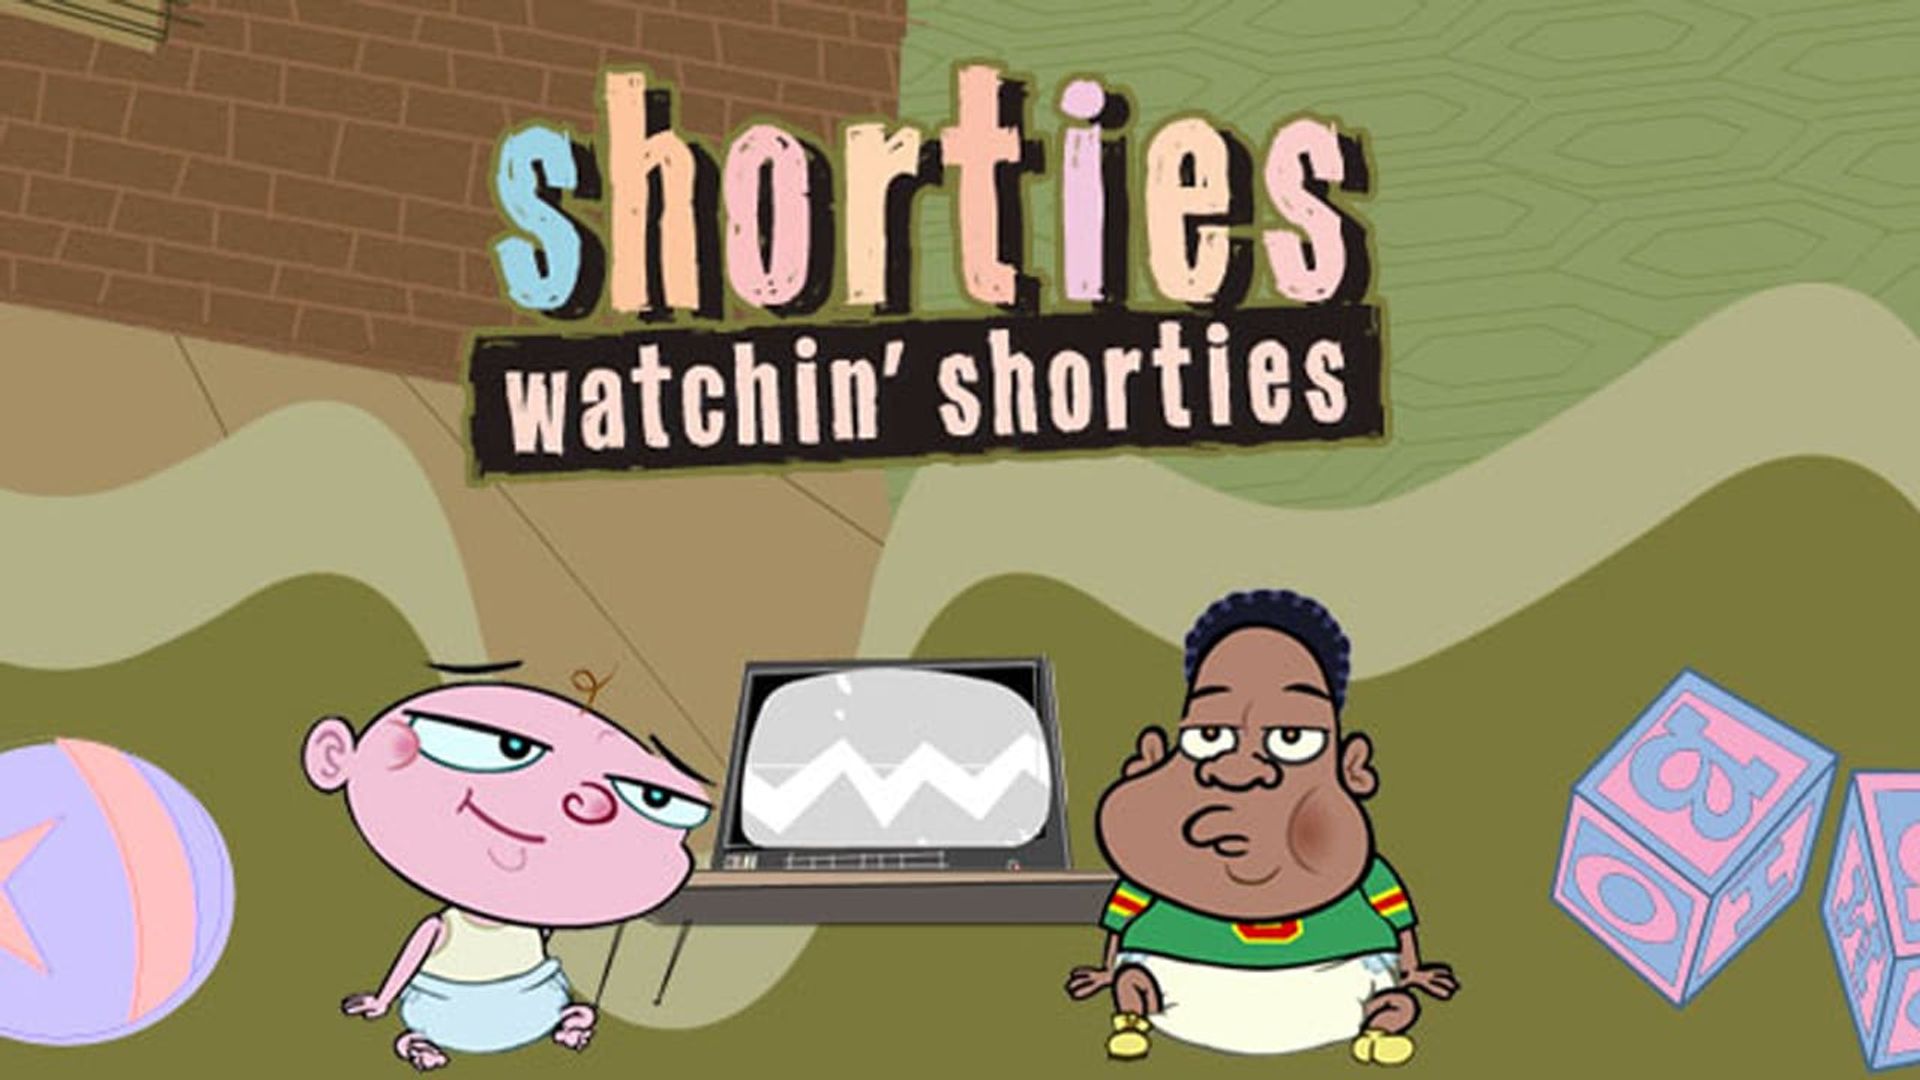 Shorties Watchin' Shorties background